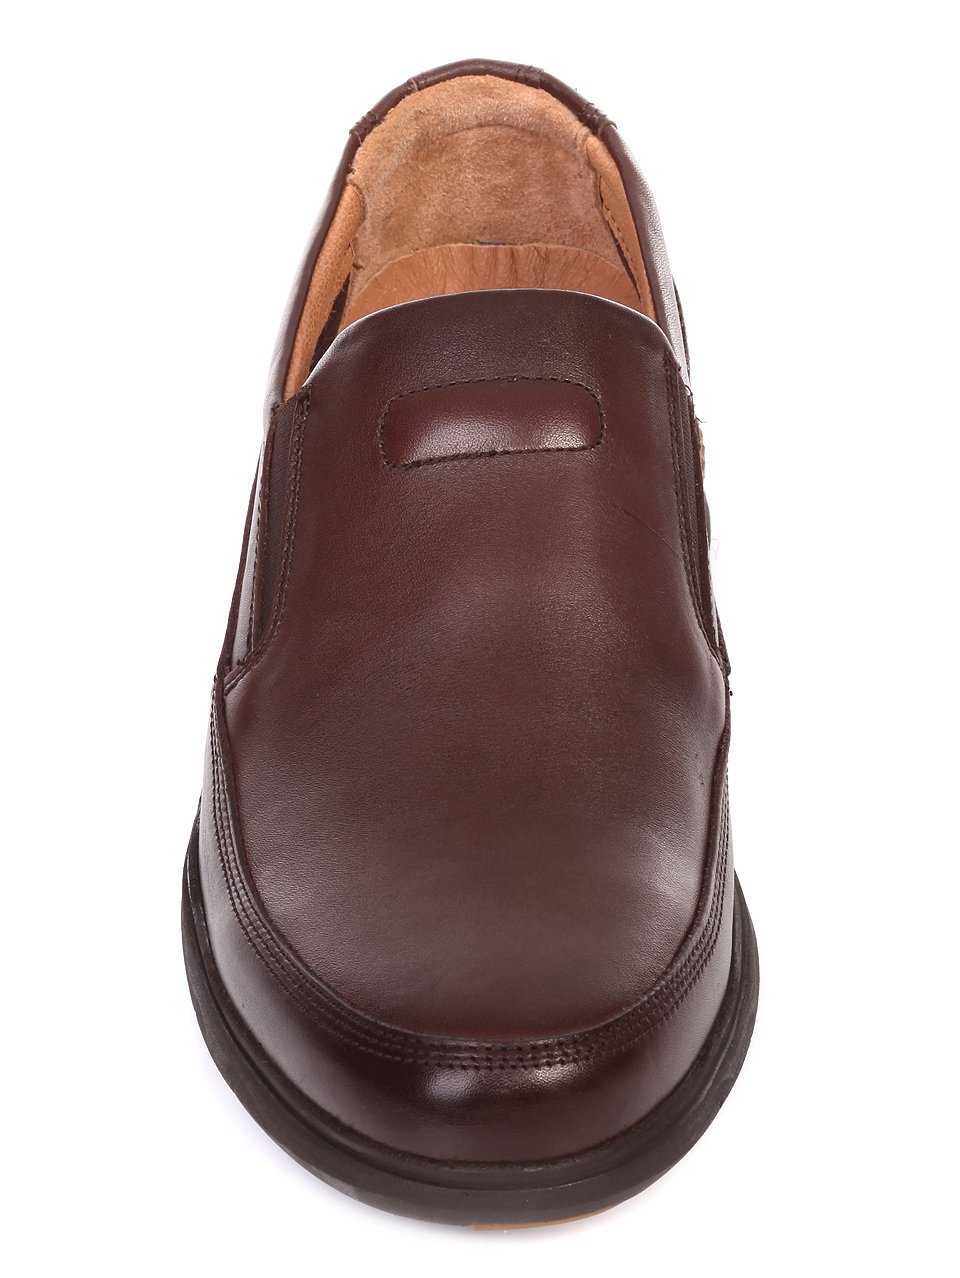 Ежедневни мъжки обувки от естествена кожа в кафяво 8Y0324-F308 brown